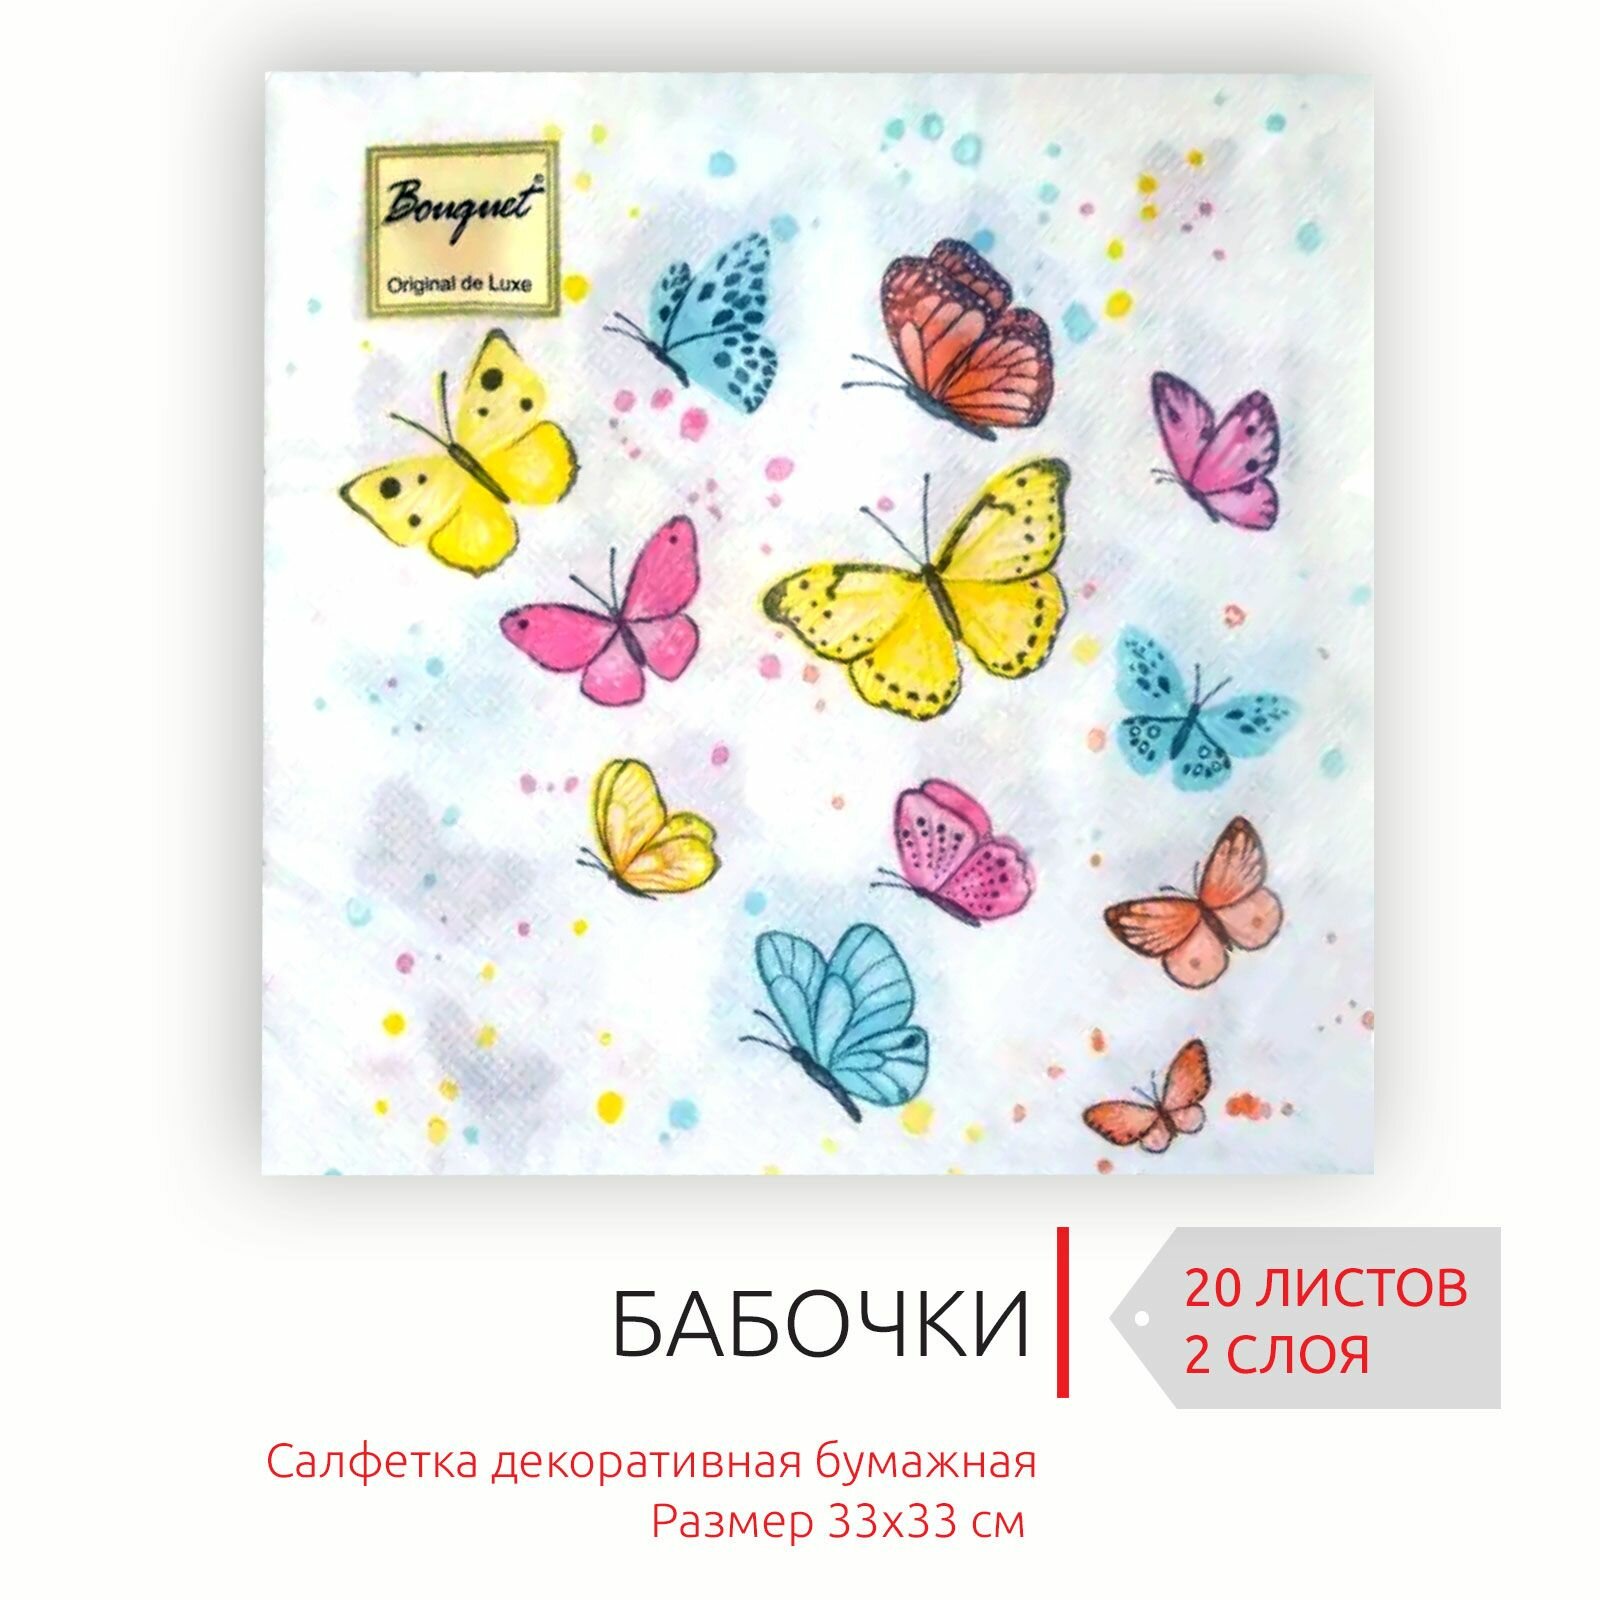 Декоративные праздничные бумажные салфетки Бабочки, 33х33 см, 2 слоя, 20 листов